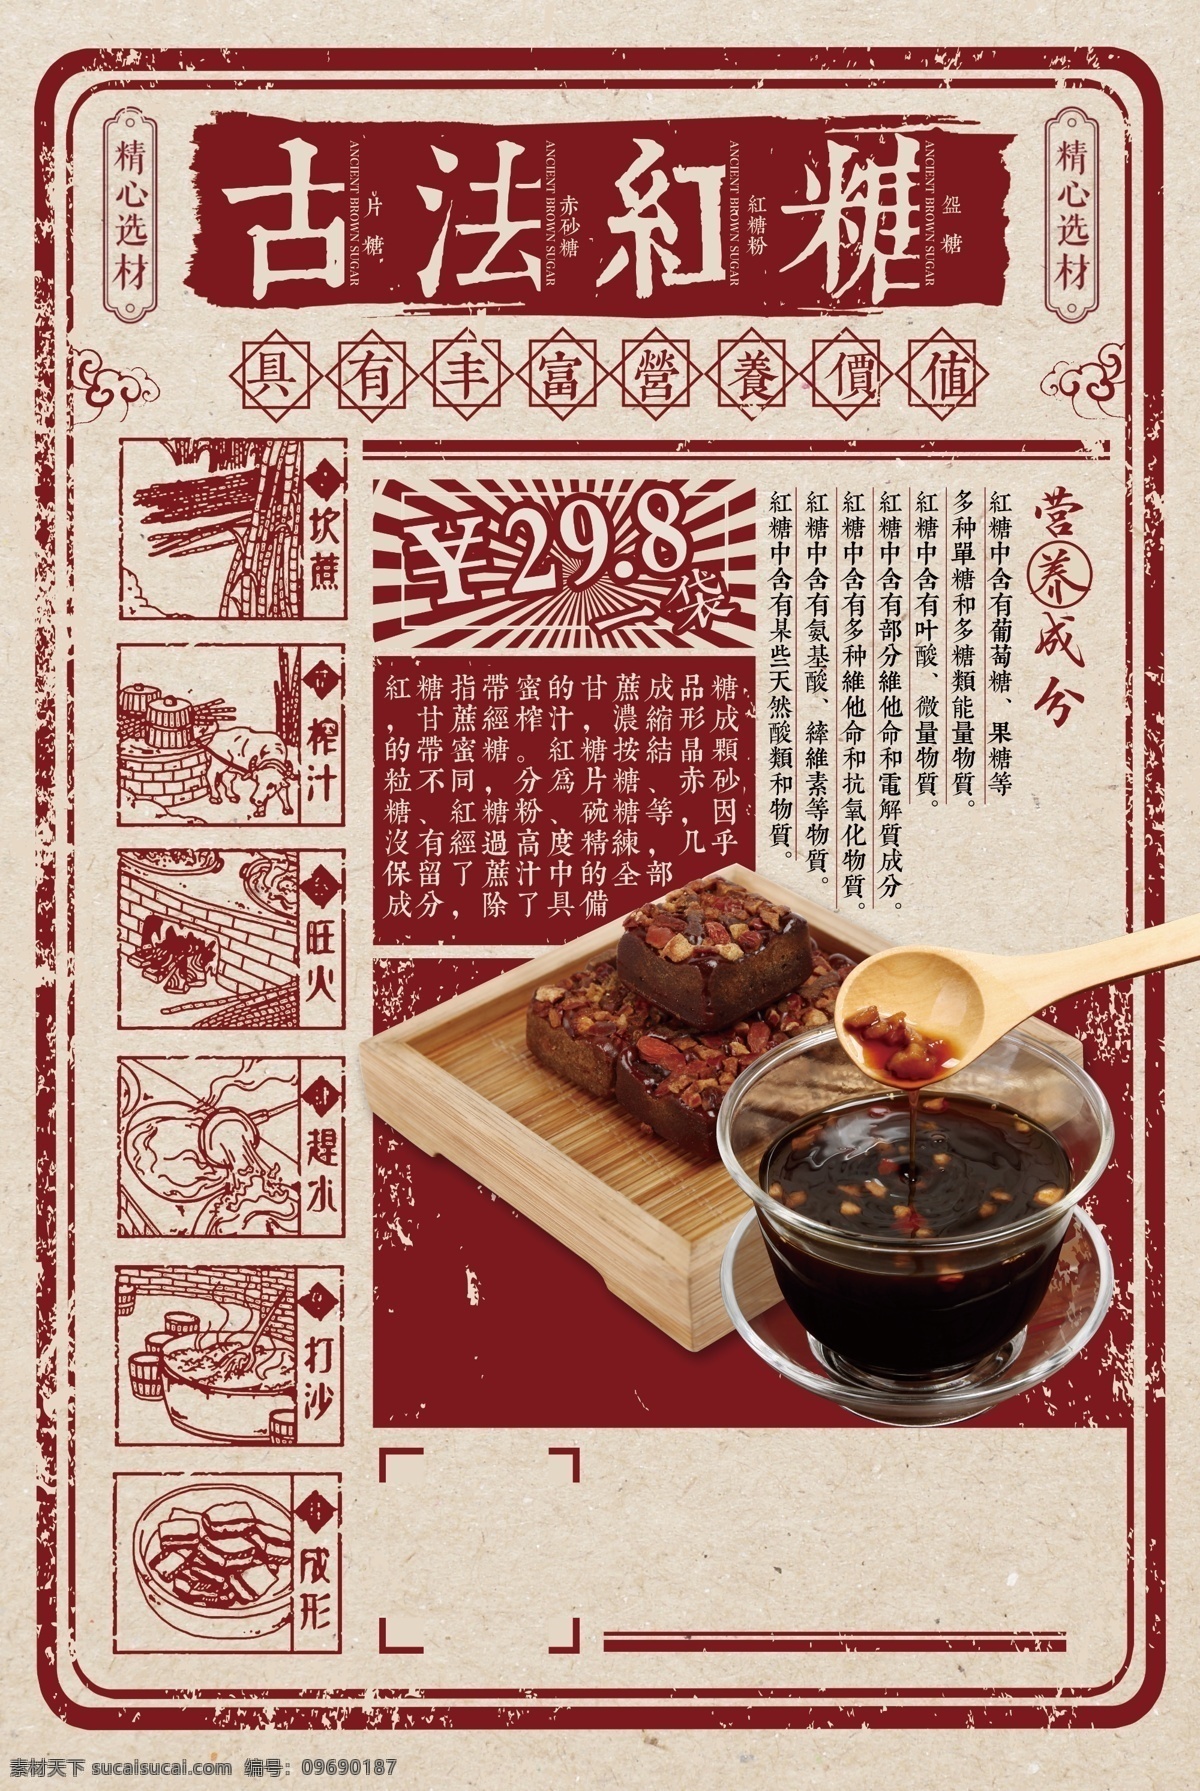 古方 红糖 传统 美食 宣传海报 宣传 海报 餐饮美食 类